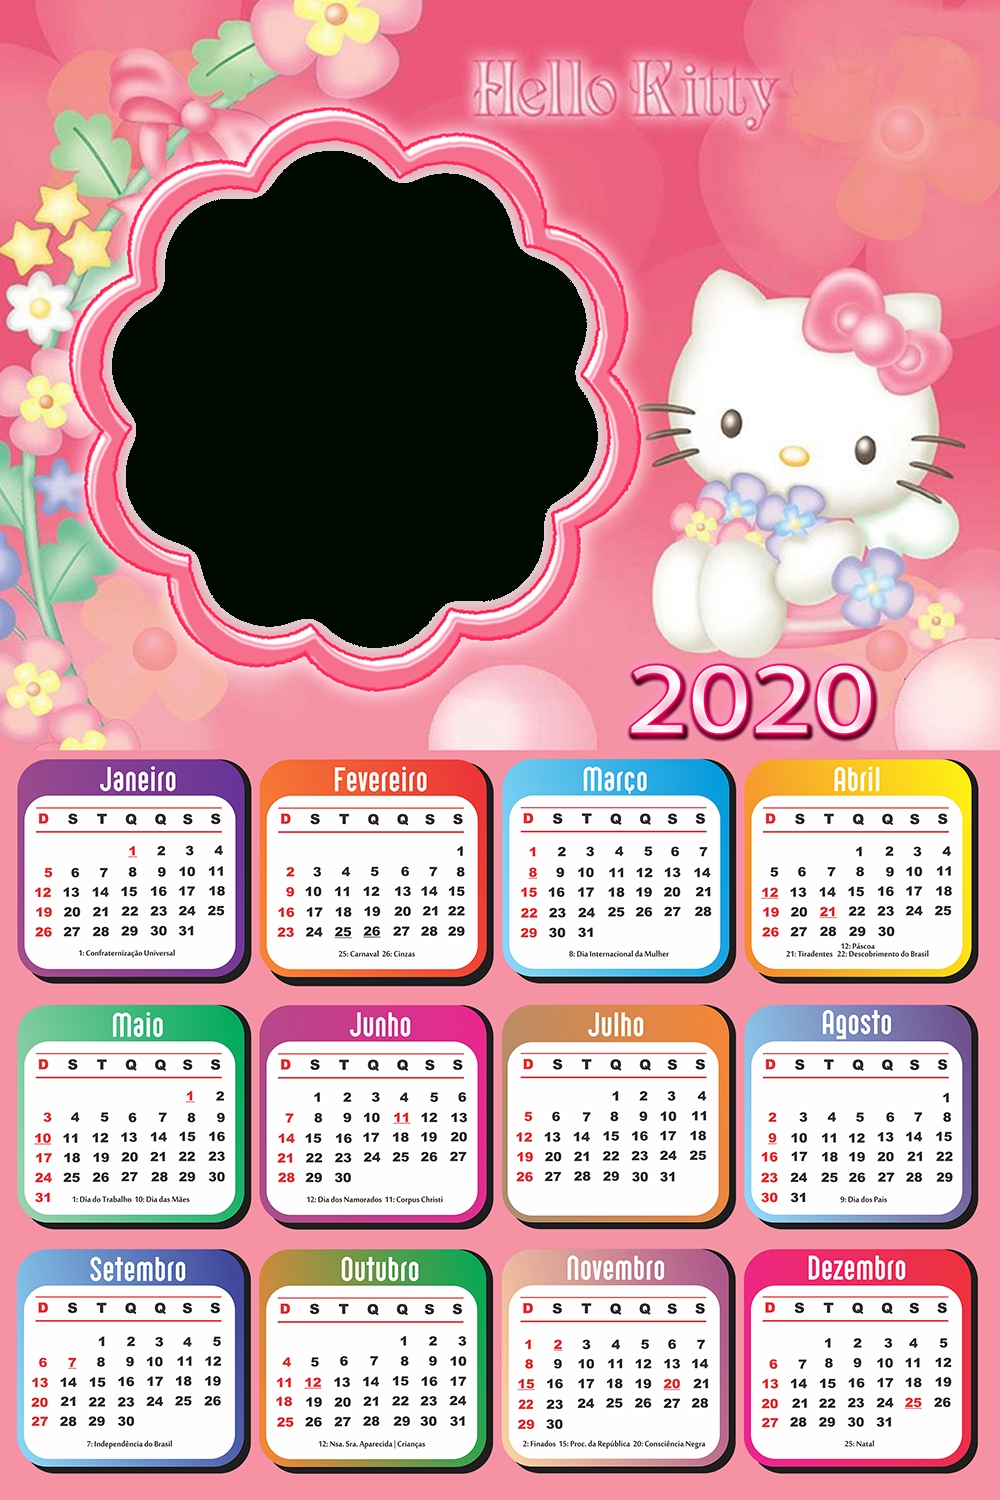 Calendario 2020 Hello Kitty - Calendario 2019